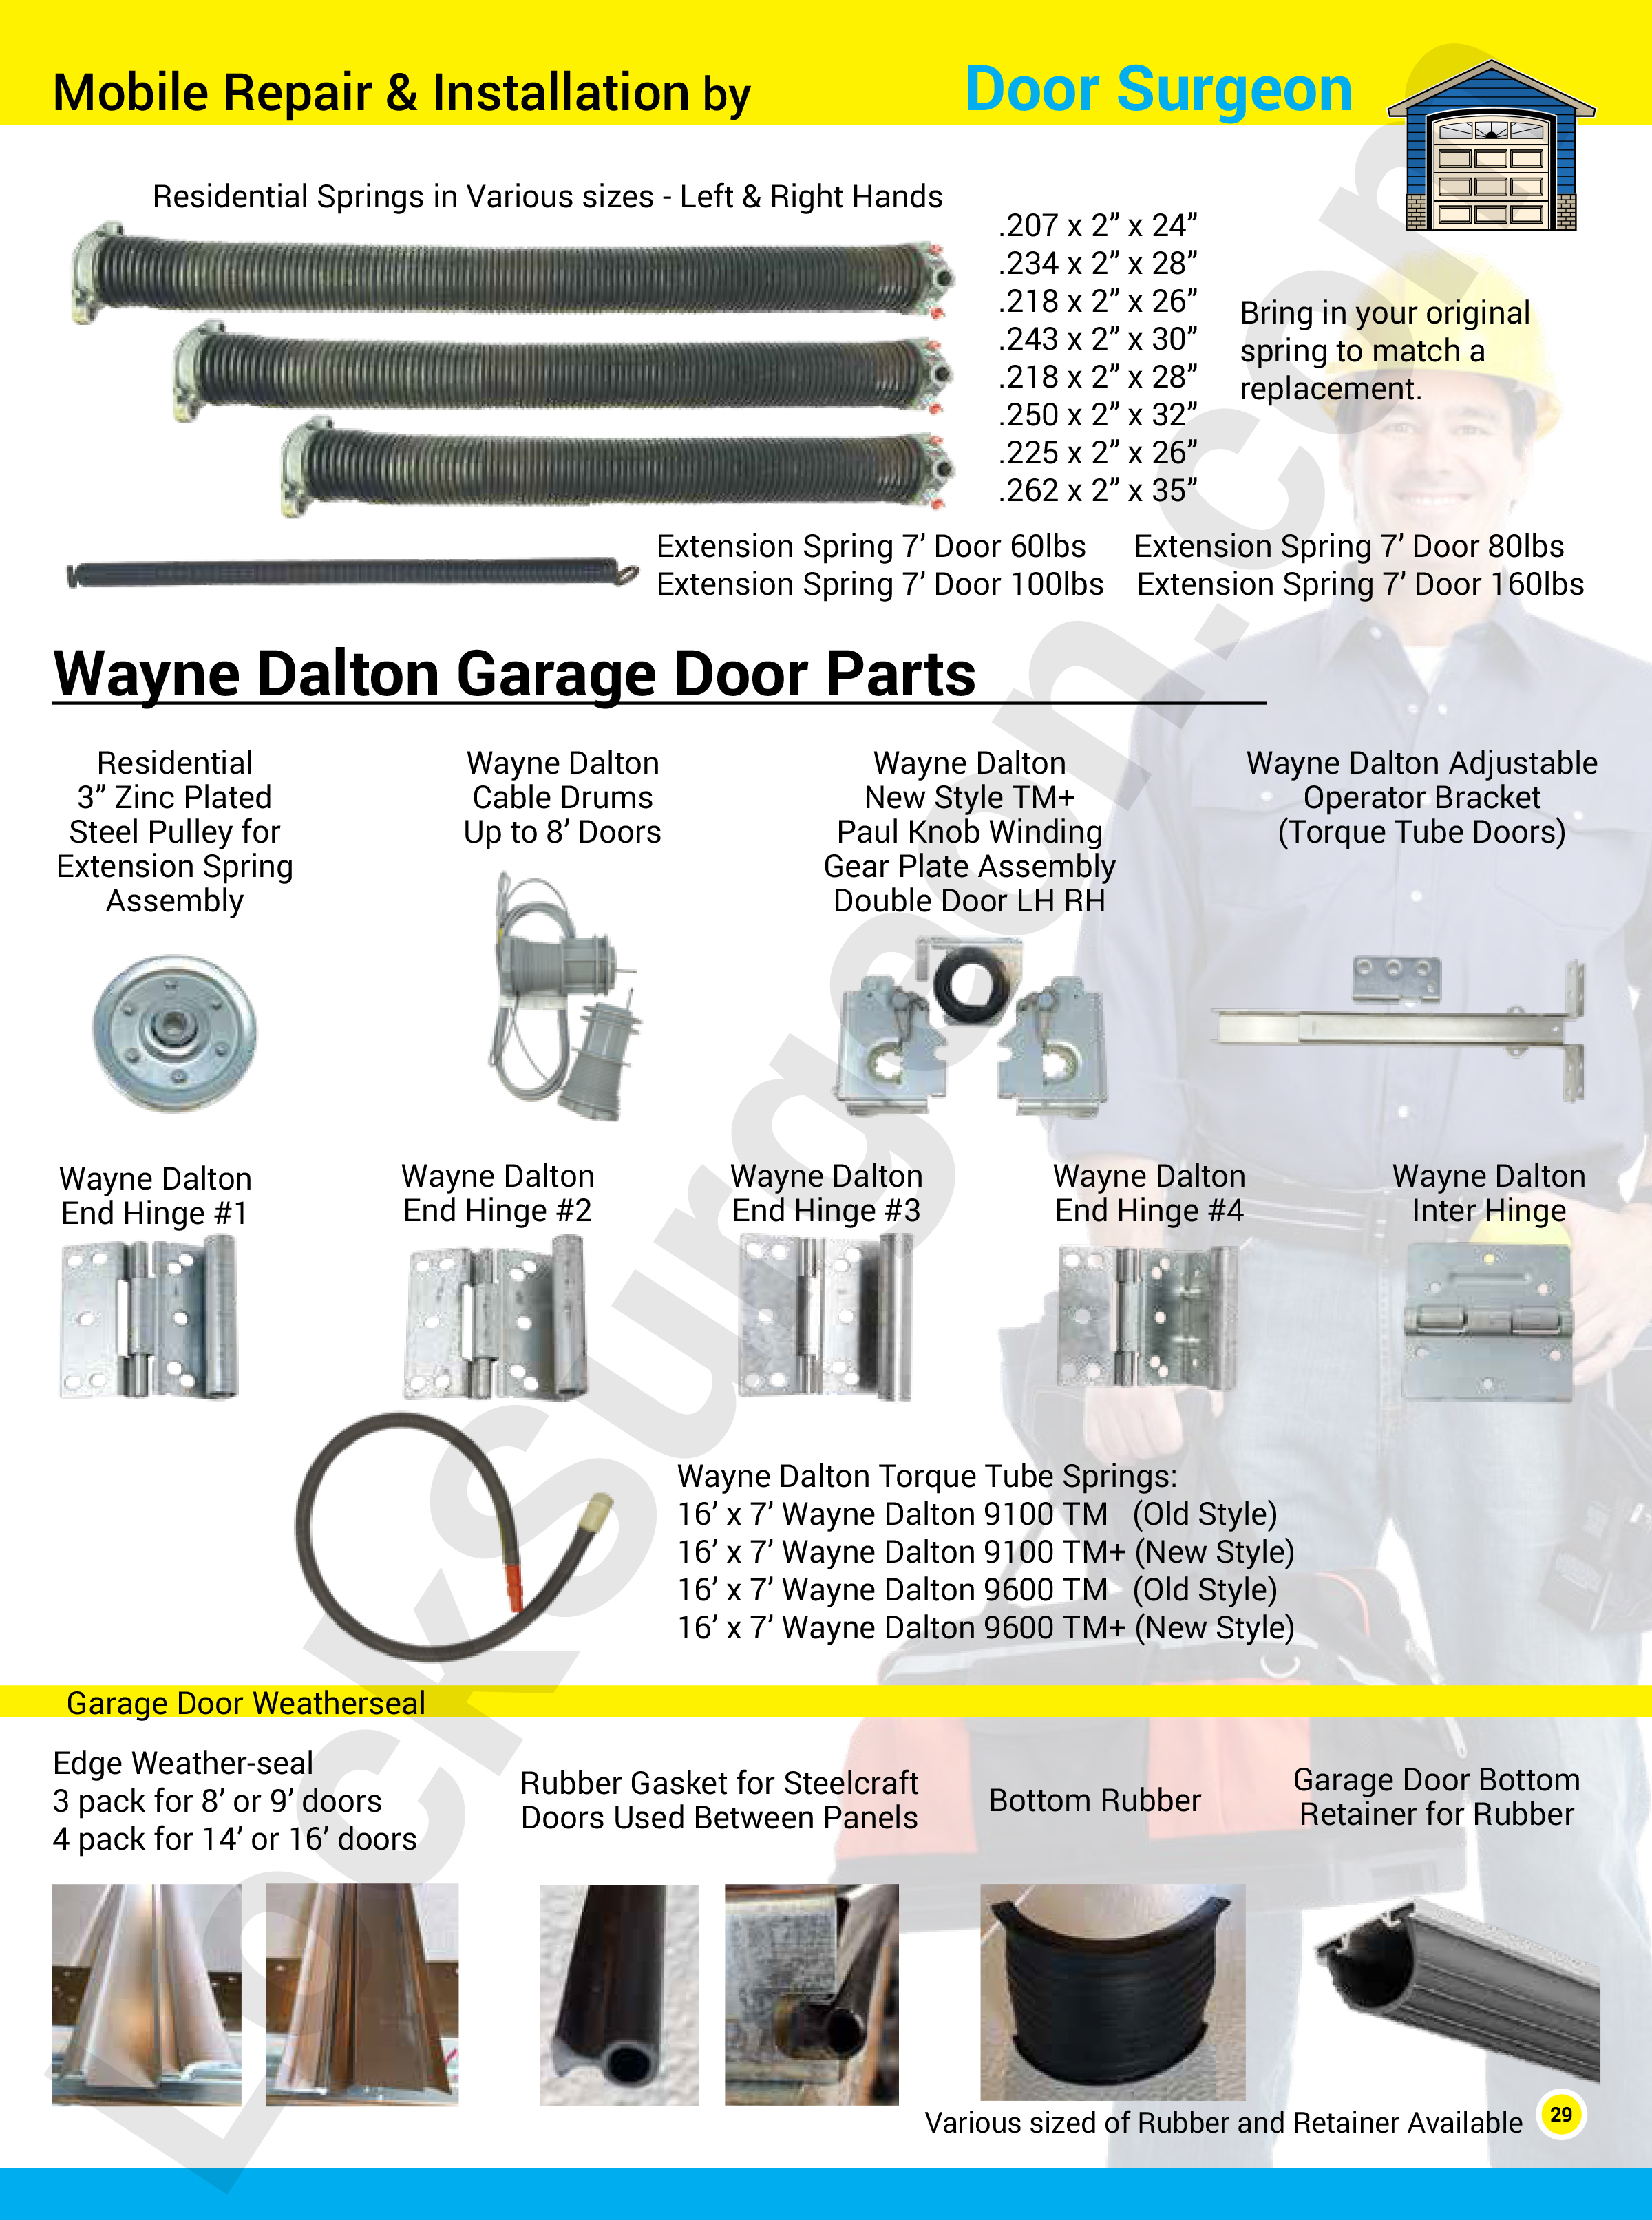 Garage door part solutions for home, commercial, and trucks. Garage door repairs, replacement parts and new garage doors. Mobile repair and installation from Lock Surgeon or Door Surgeon. Wayne Dalton garage door parts.